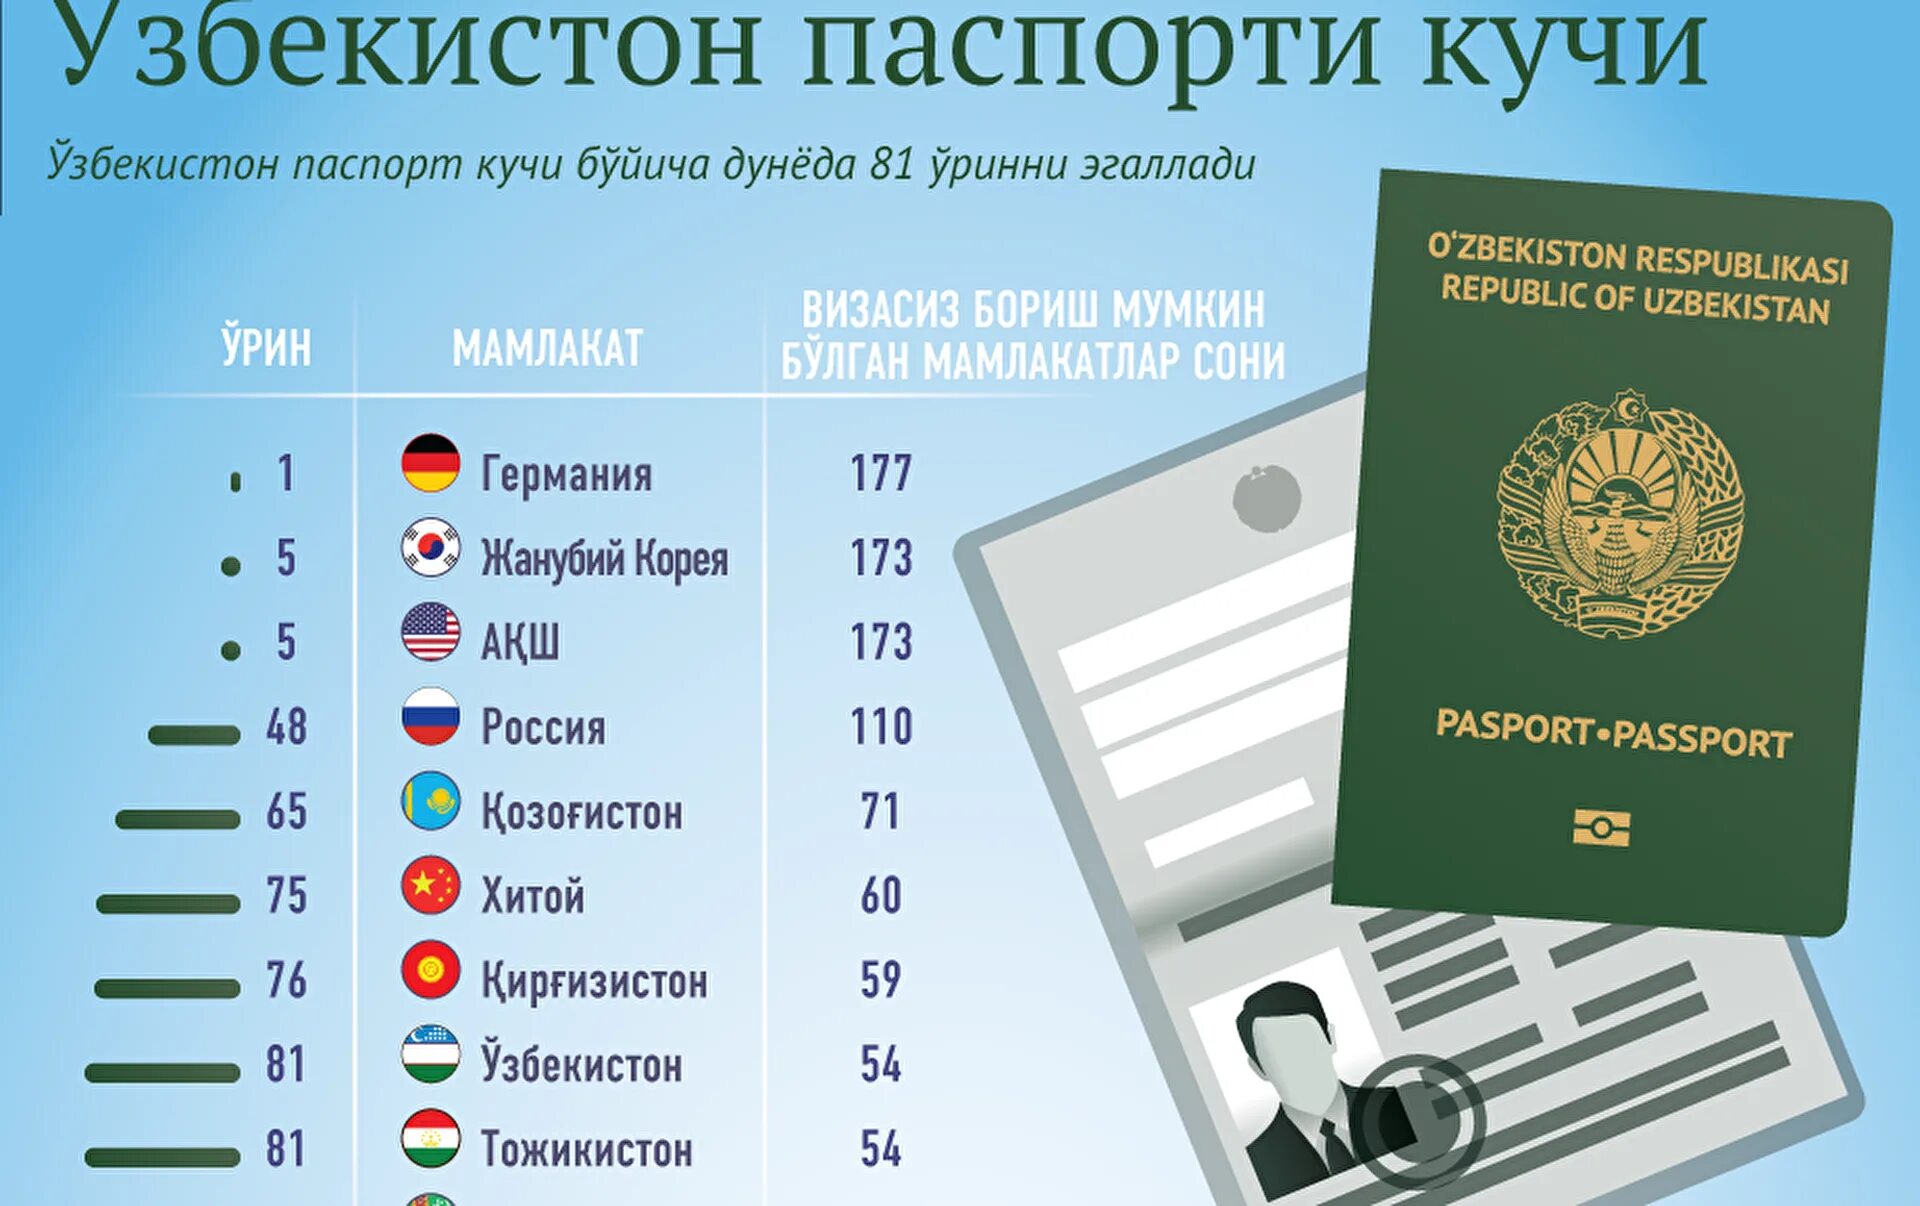 Виза для граждан Узбекистана. Безвизовые страны для граждан Узбекистана. Гражданам таджикистана сколько дней